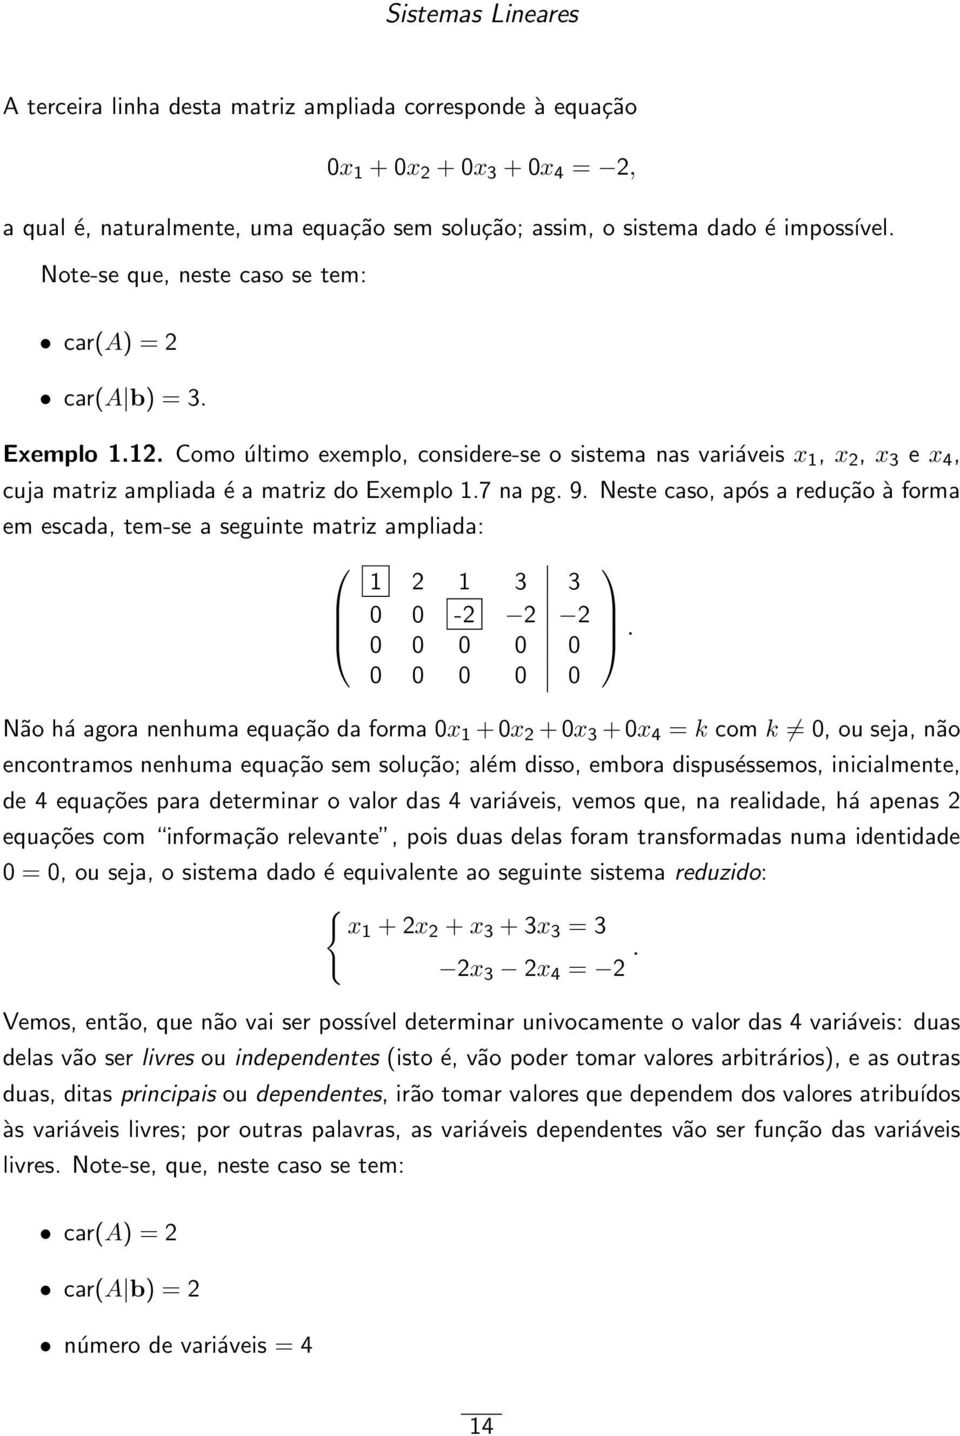 9 Neste caso, após a redução à forma em escada, tem-se a seguinte matriz ampliada: 1 2 1 3 3 0 0-2 2 2 0 0 0 0 0 0 0 0 0 0 Não há agora nenhuma equação da forma 0x 1 + 0x 2 + 0x 3 + 0x 4 = k com k 0,